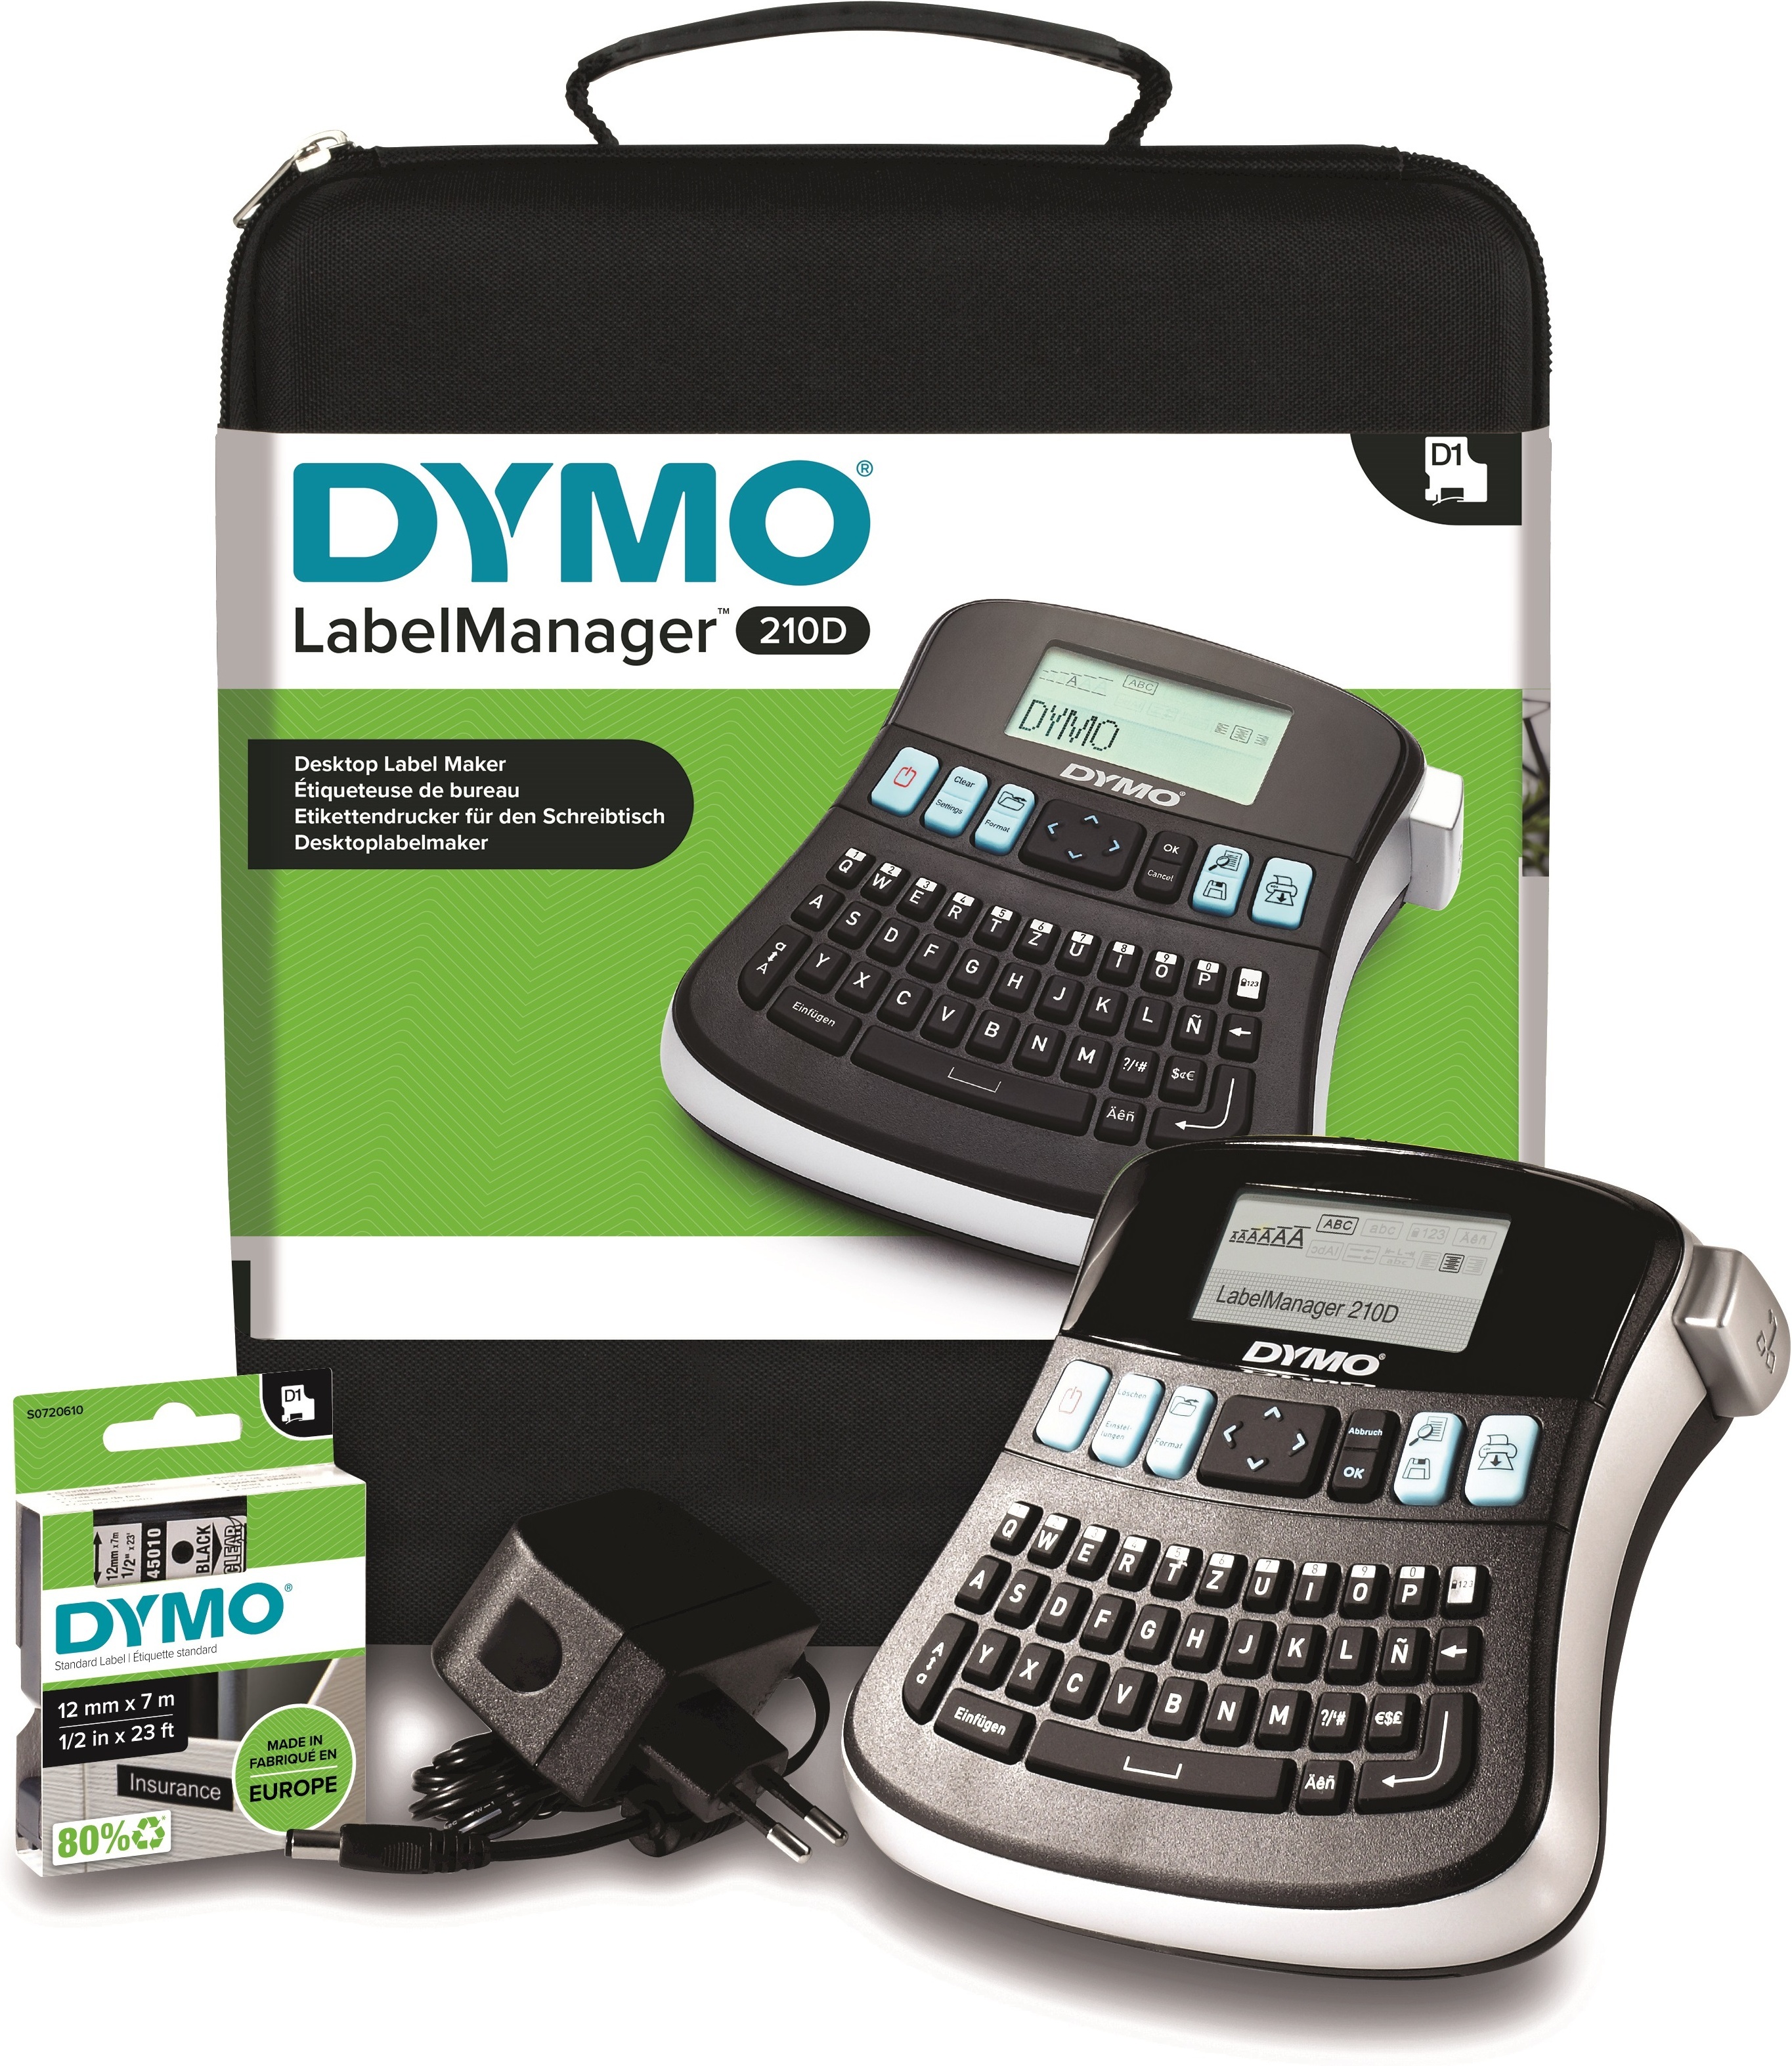 Dymo этикетки. Принтер Dymo 210d. Принтер Dymo Label Manager 210d. Ленточный принтер Dymo Label Manager 210d 2094492. Принтер Dymo Label Manager 210d {s0815220}.